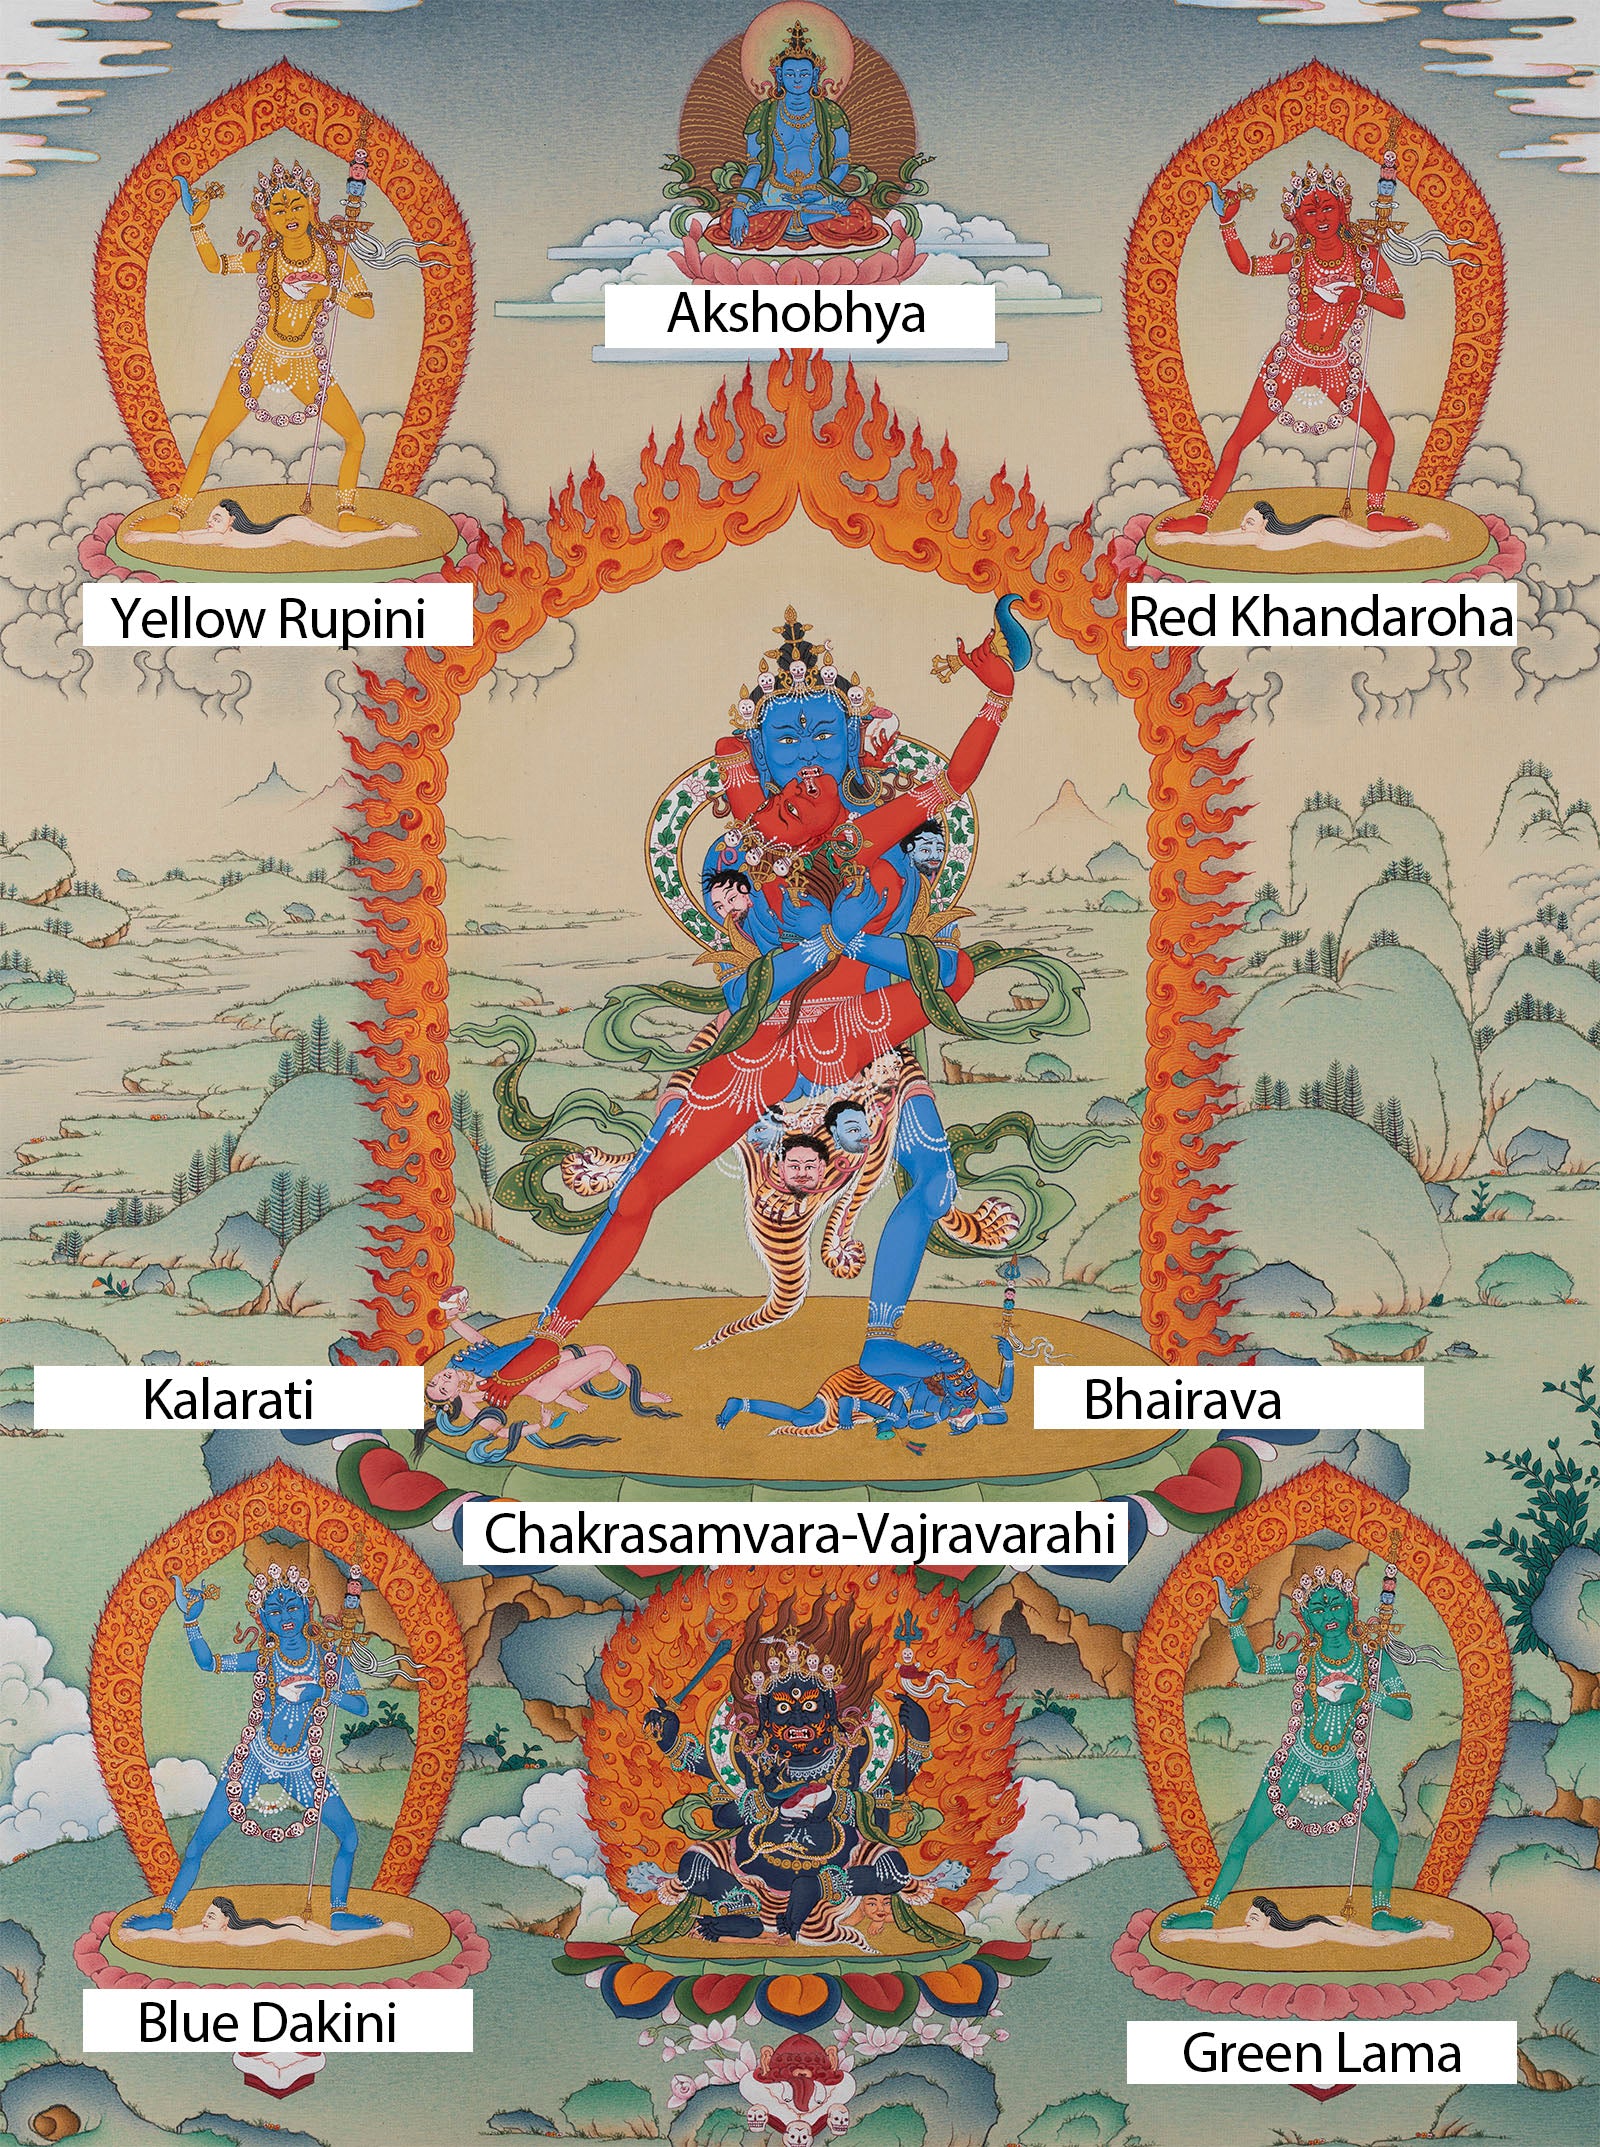 chakrasamvara and 4 dakini